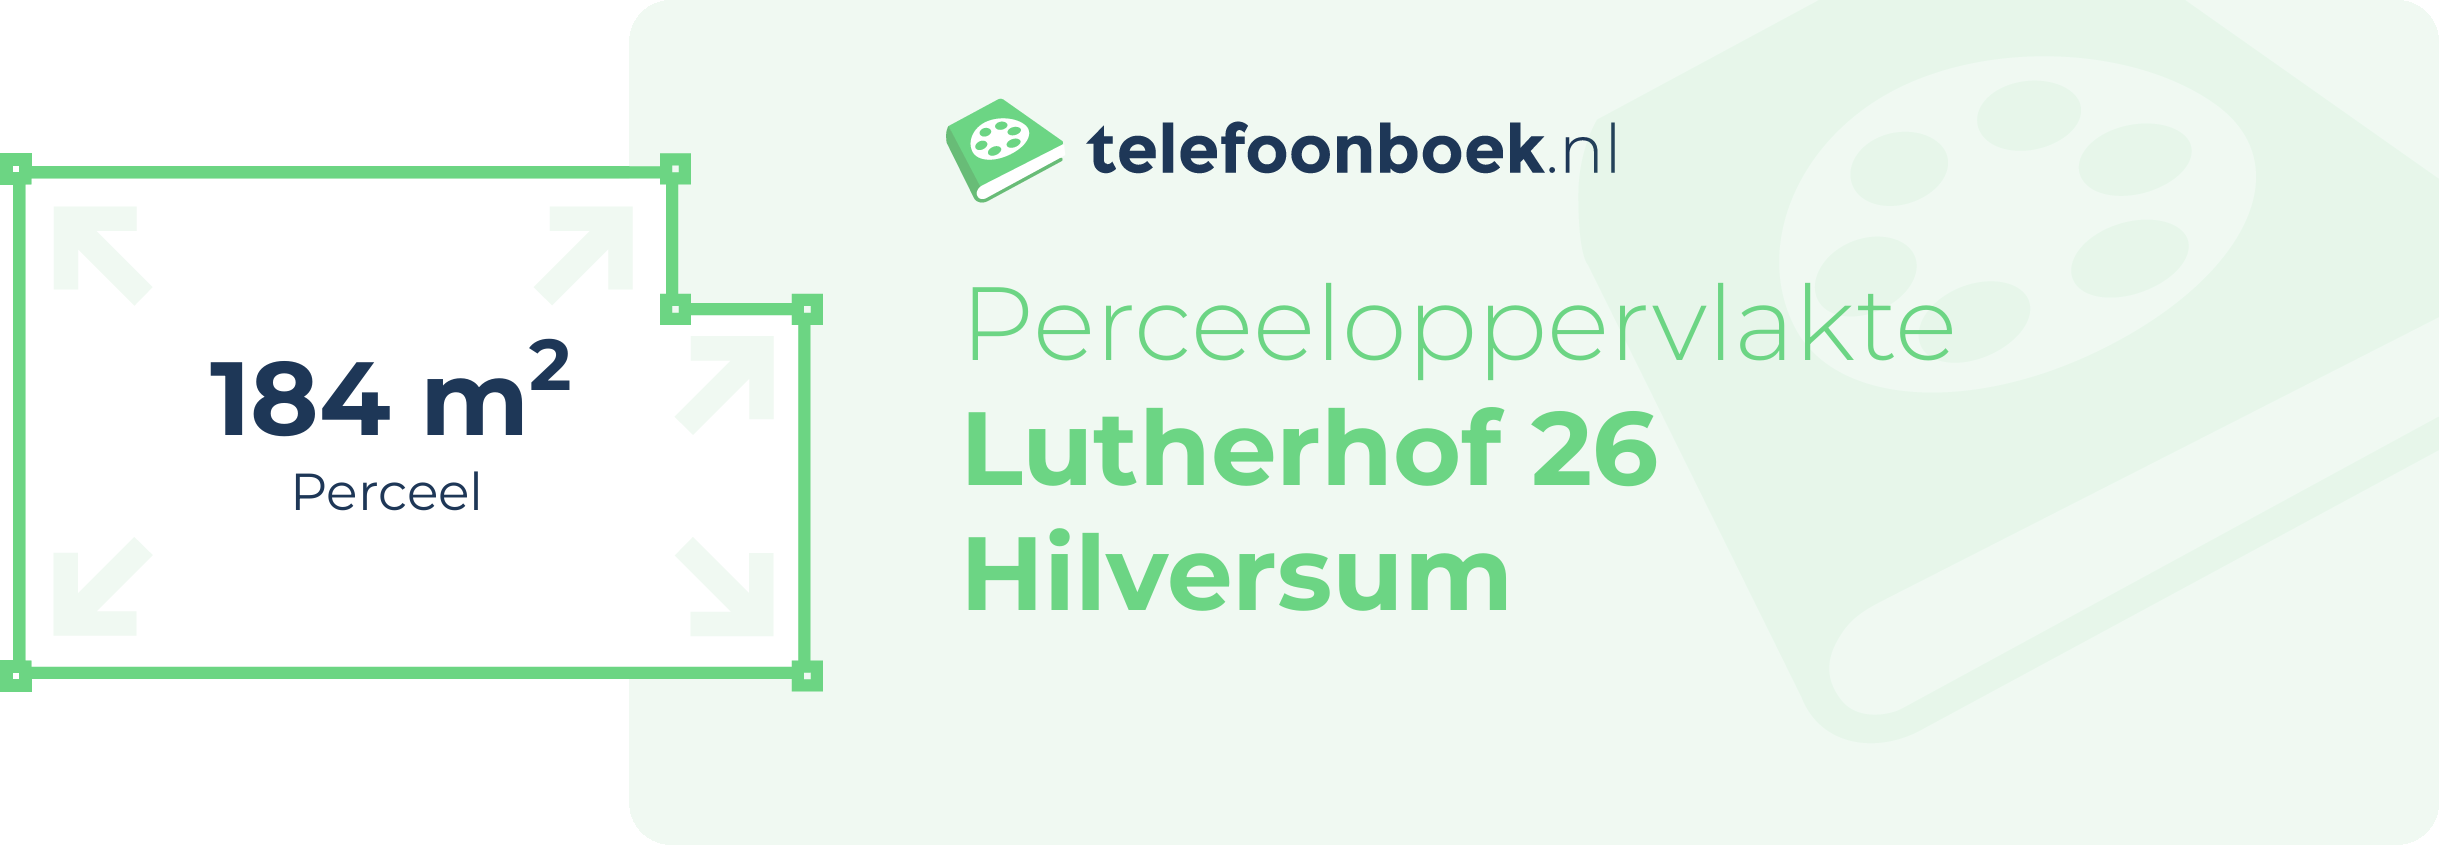 Perceeloppervlakte Lutherhof 26 Hilversum